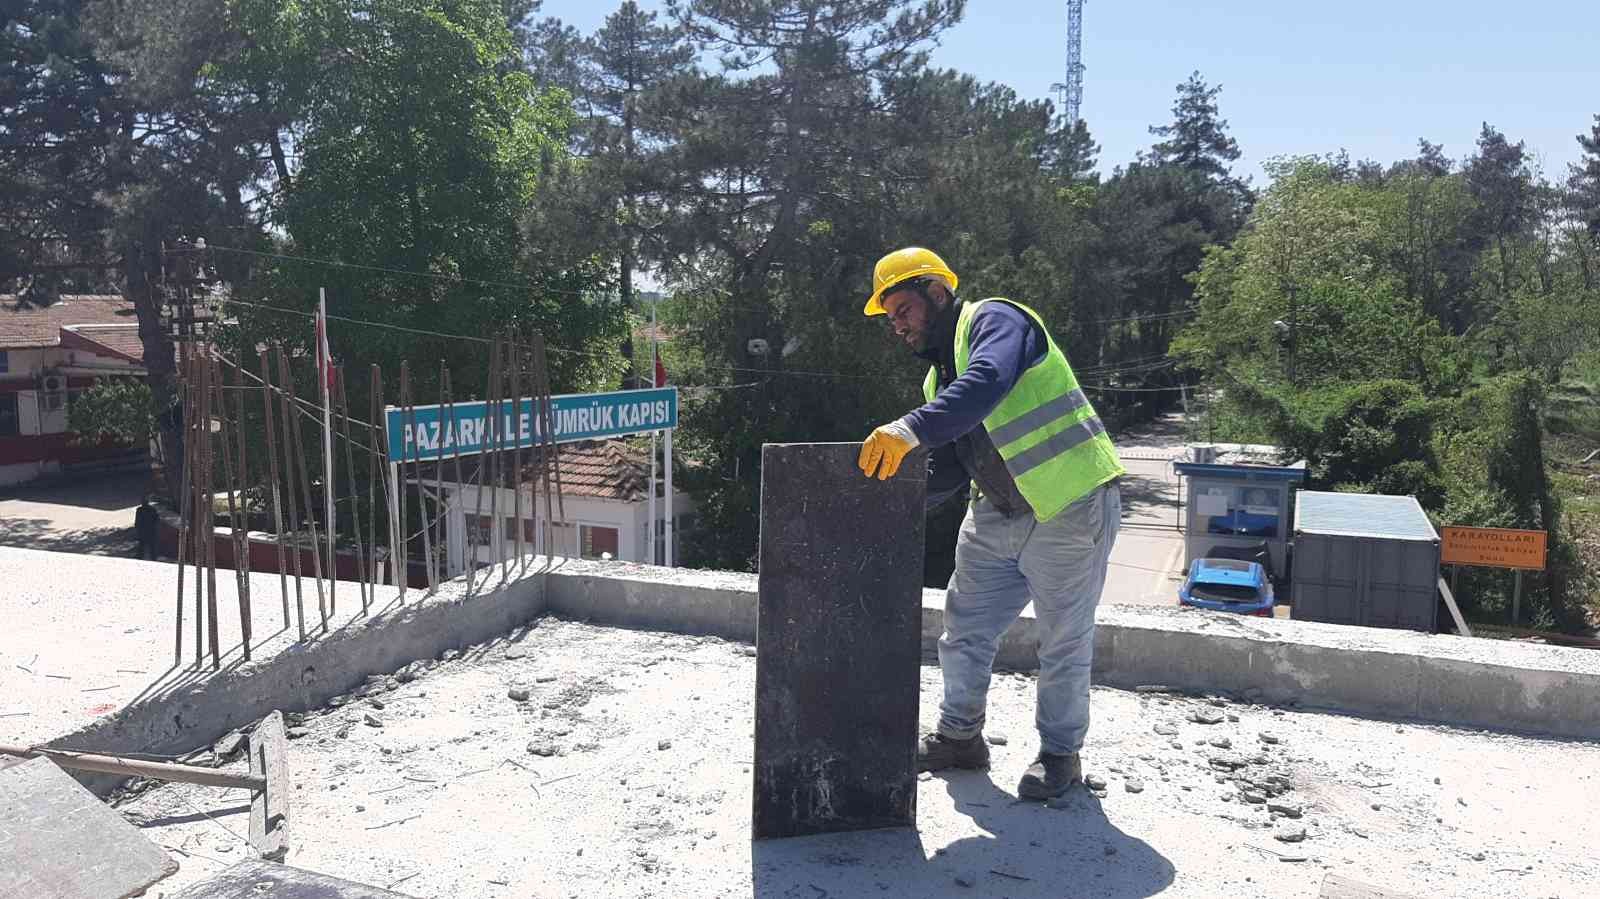 Türkiye’nin Yunanistan’a açılan sınır kapılarından birisi olan Pazarkule Sınır Kapısı’nda gerçekleştirilen modernizasyon çalışmalarının yüzde 50 ...